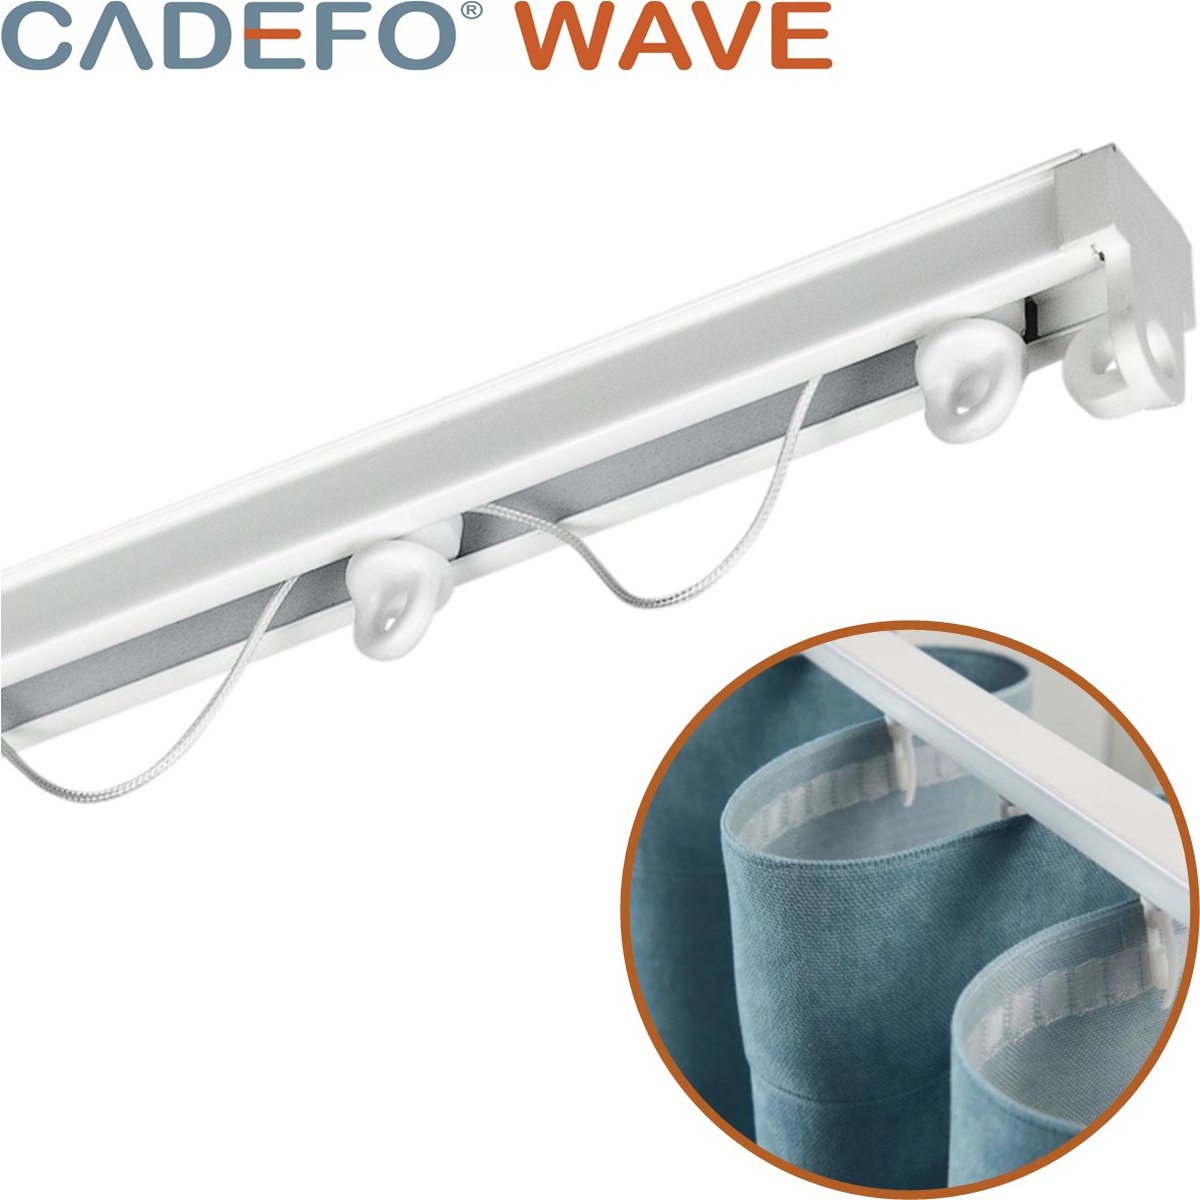 CADEFO WAVE (401 - 450 cm) Gordijnrails - Compleet op maat! - UIT 1 STUK - Leverbaar tot 6 meter - Plafondbevestiging - Lengte 442 cm